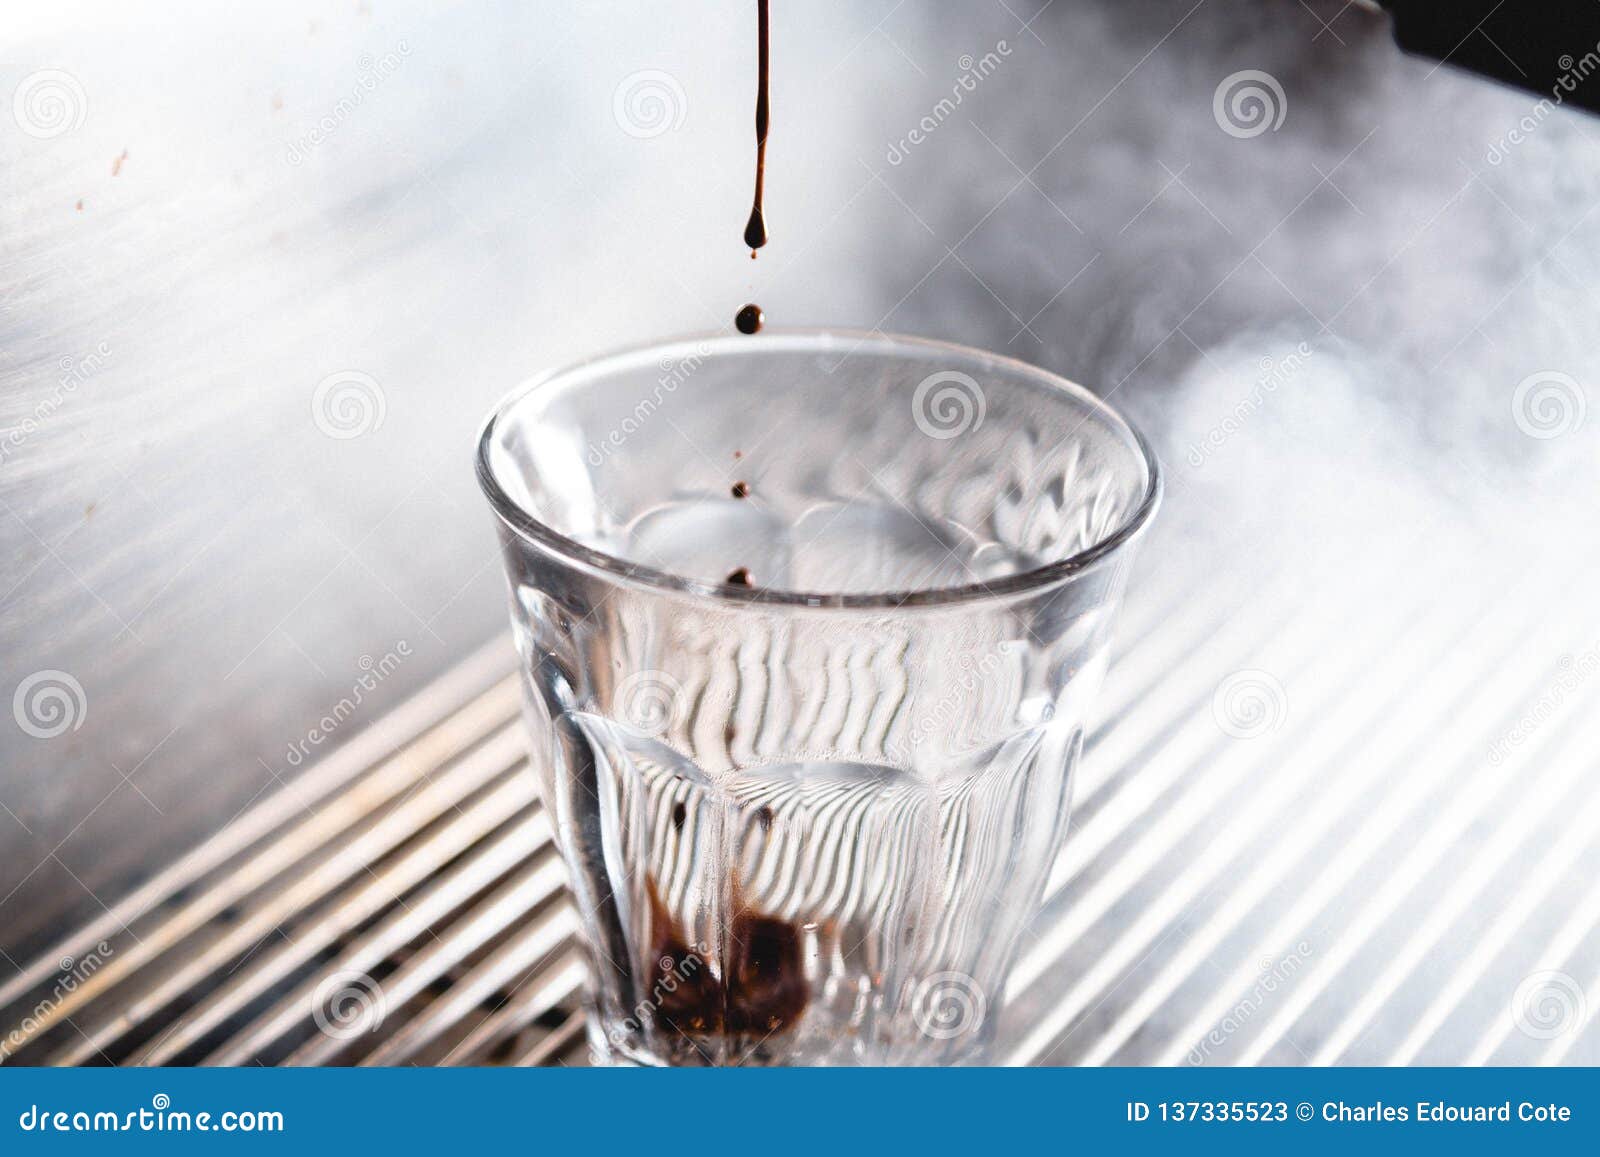 Extractie van een espresso met helder licht. Vochtige koffieextractie van espressomachine met helder licht en koffieglas